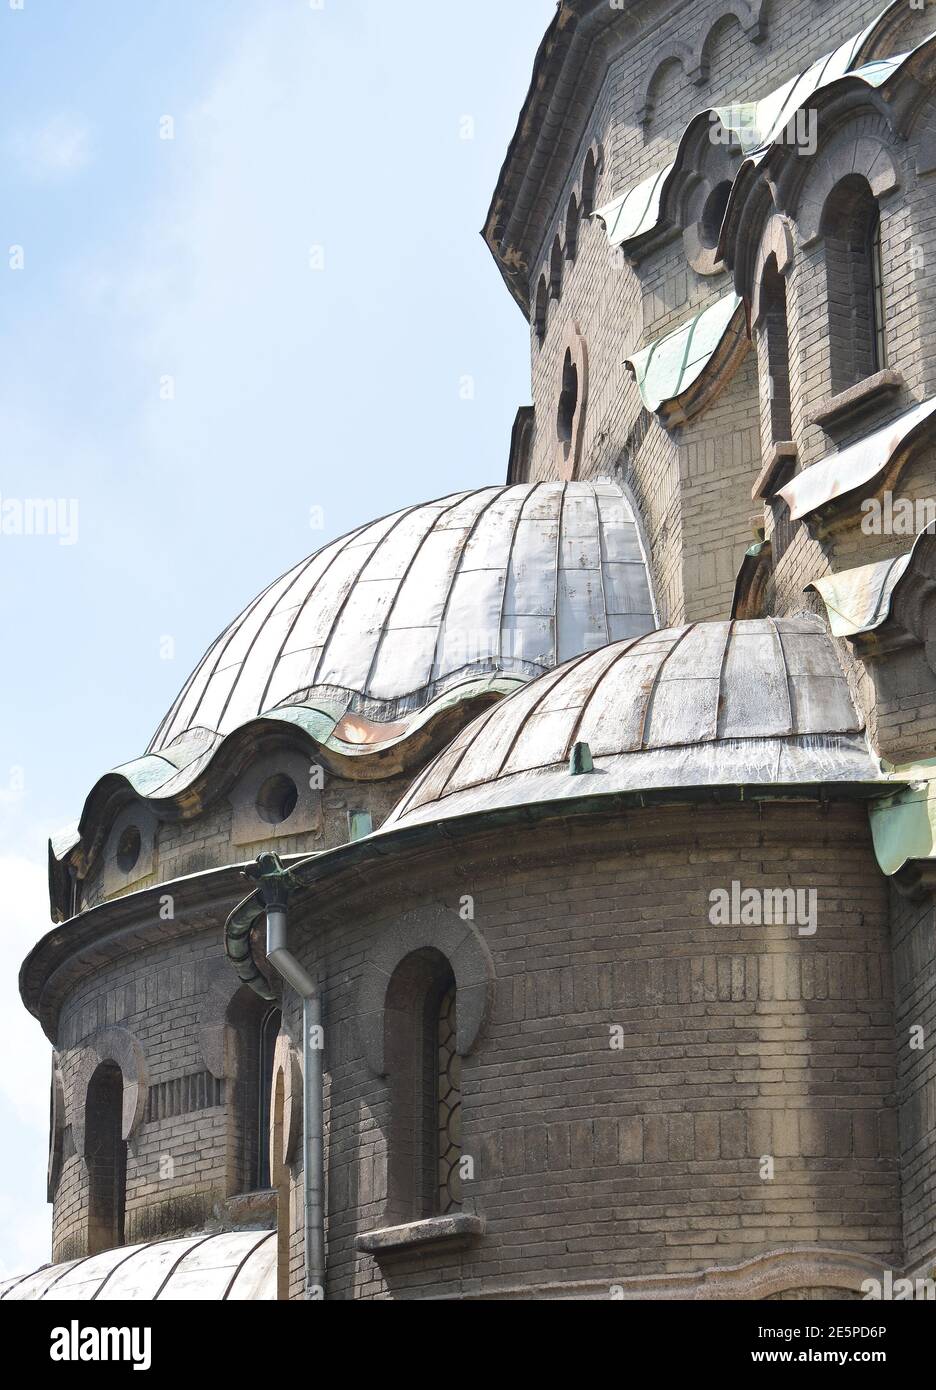 Dettagli della Chiesa ortodossa dell'Europa orientale Foto Stock